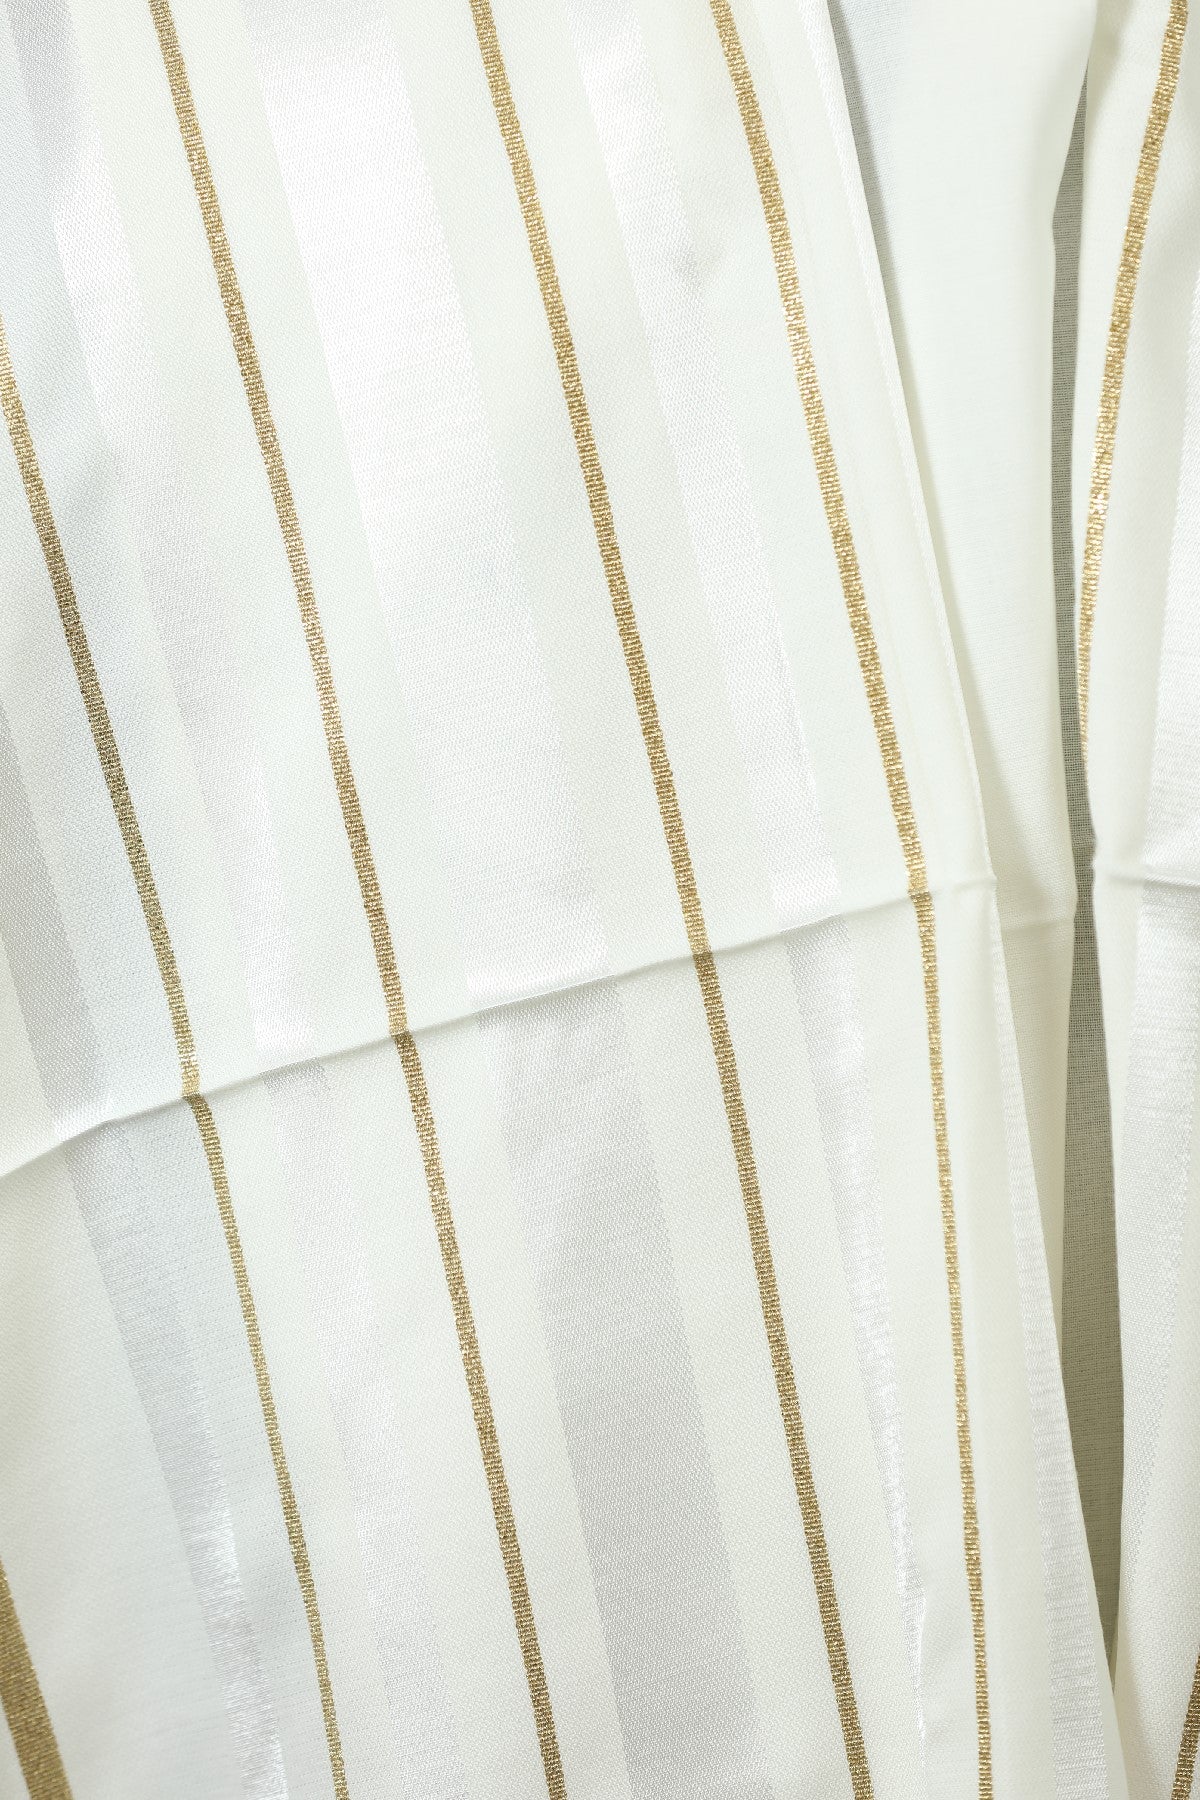 Wool Tallit [White & Gold Stripes] XXXS-L, TALITANIA